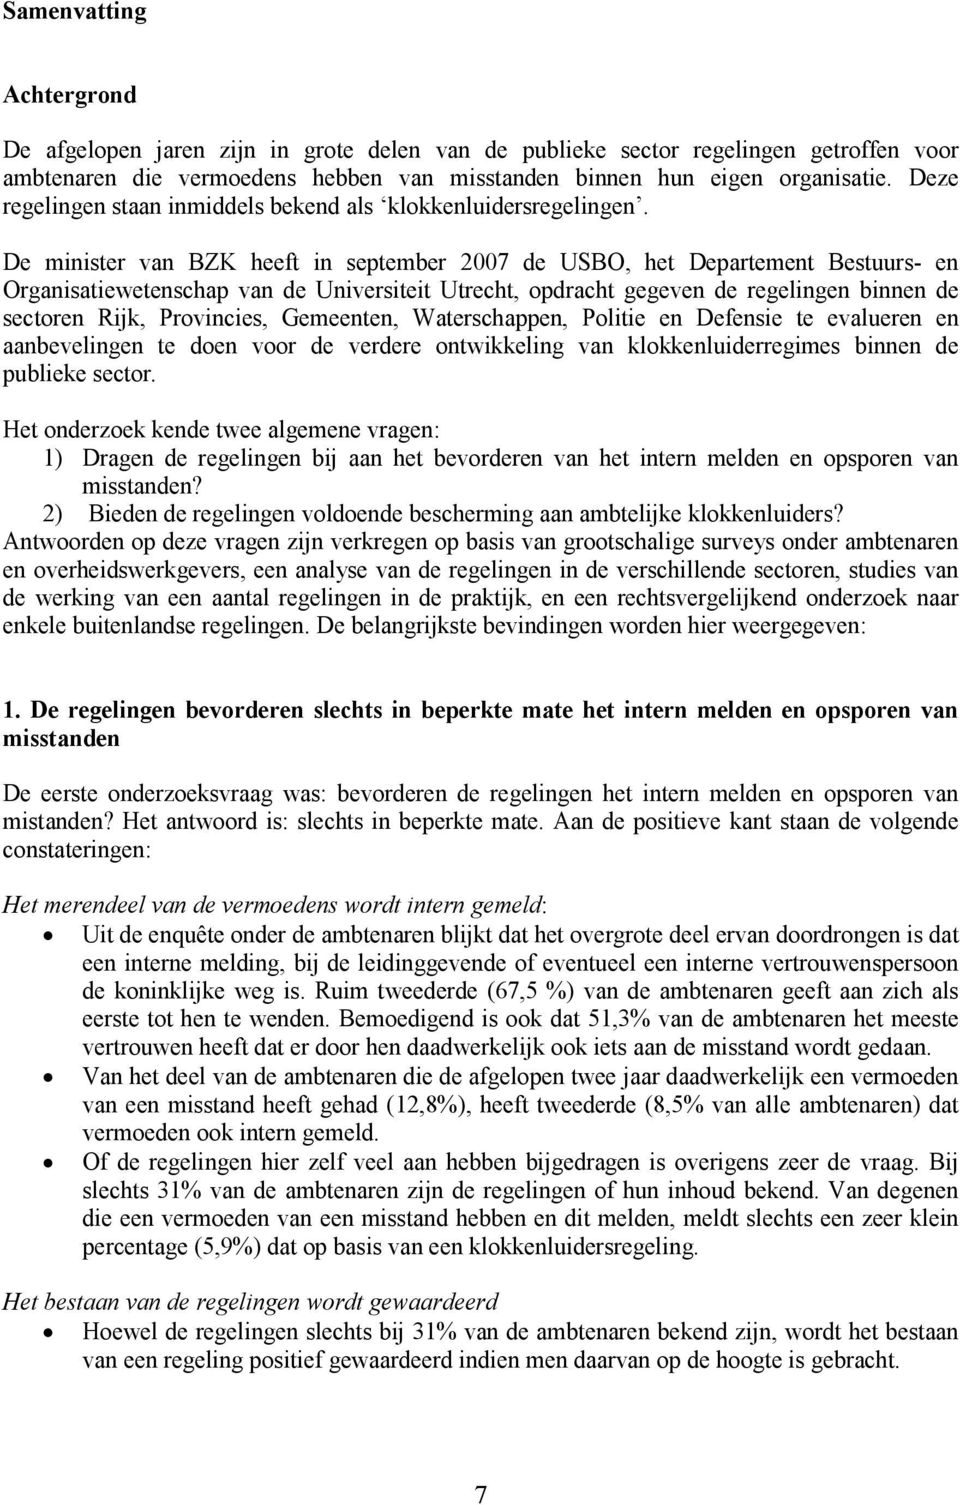 De minister van BZK heeft in september 2007 de USBO, het Departement Bestuurs- en Organisatiewetenschap van de Universiteit Utrecht, opdracht gegeven de regelingen binnen de sectoren Rijk,